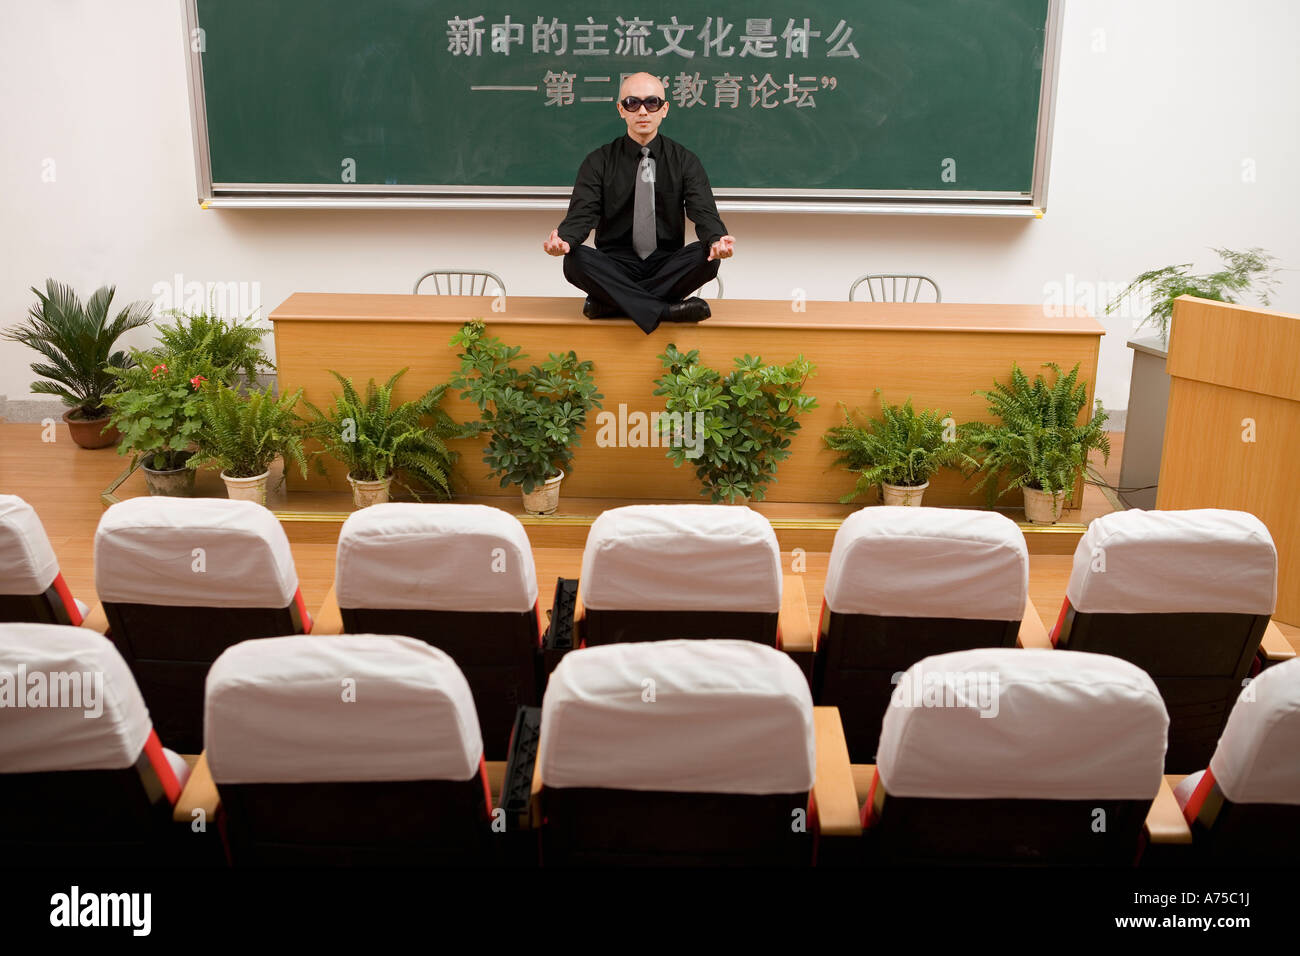 Teacher meditating on desk Stock Photo